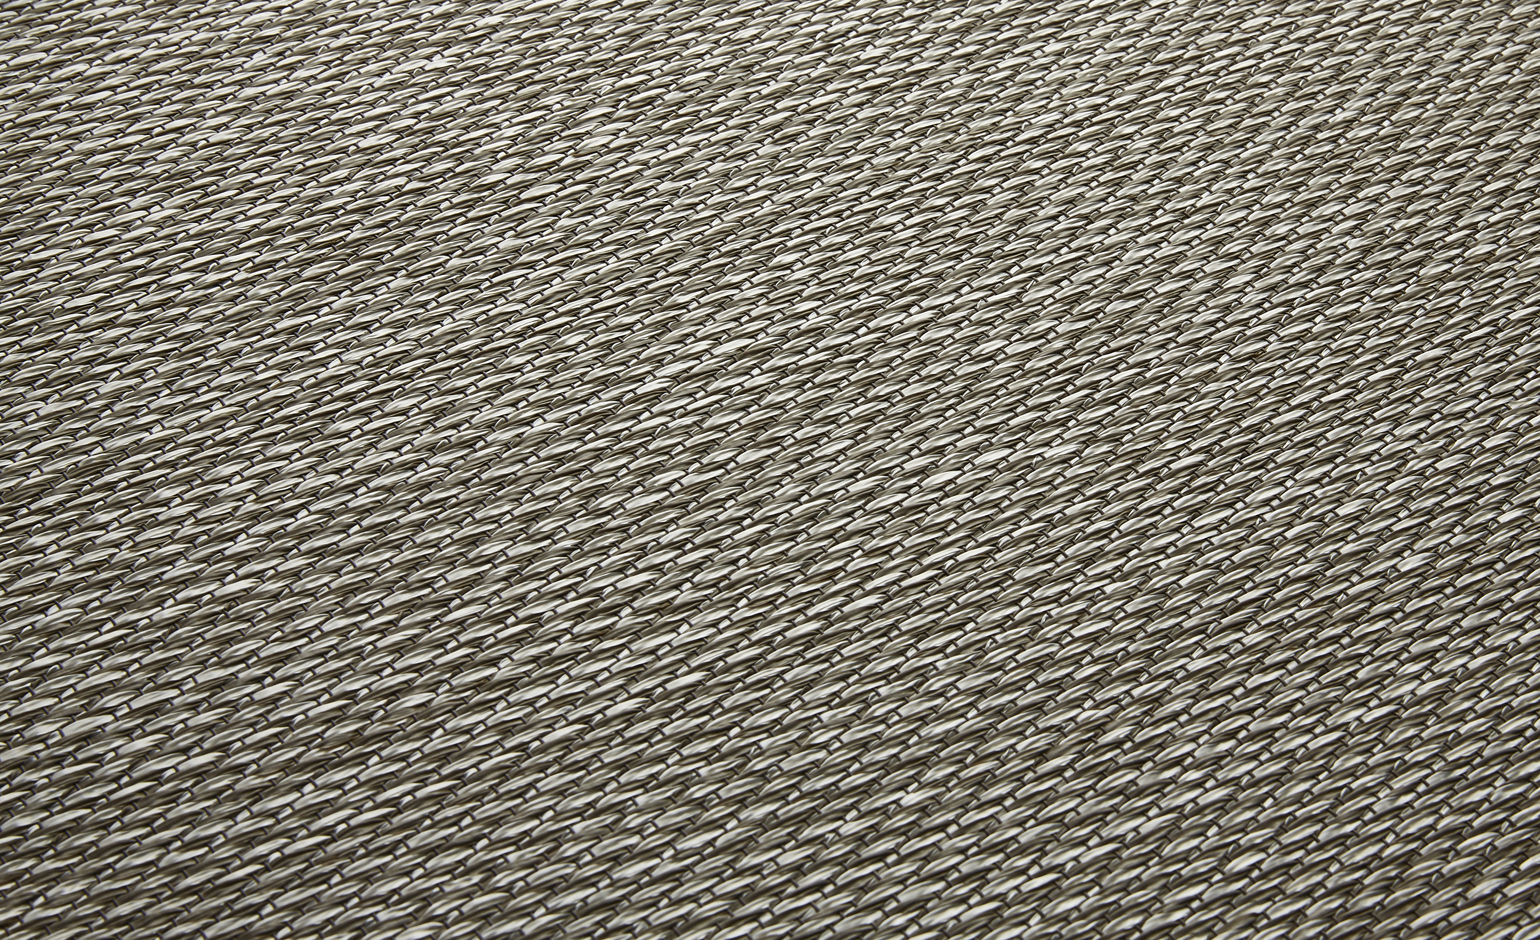 Sol vinyle rouleau METALLIC LOOK NACRE, Textile fibre tissée, nacre, rouleau 2.00 m